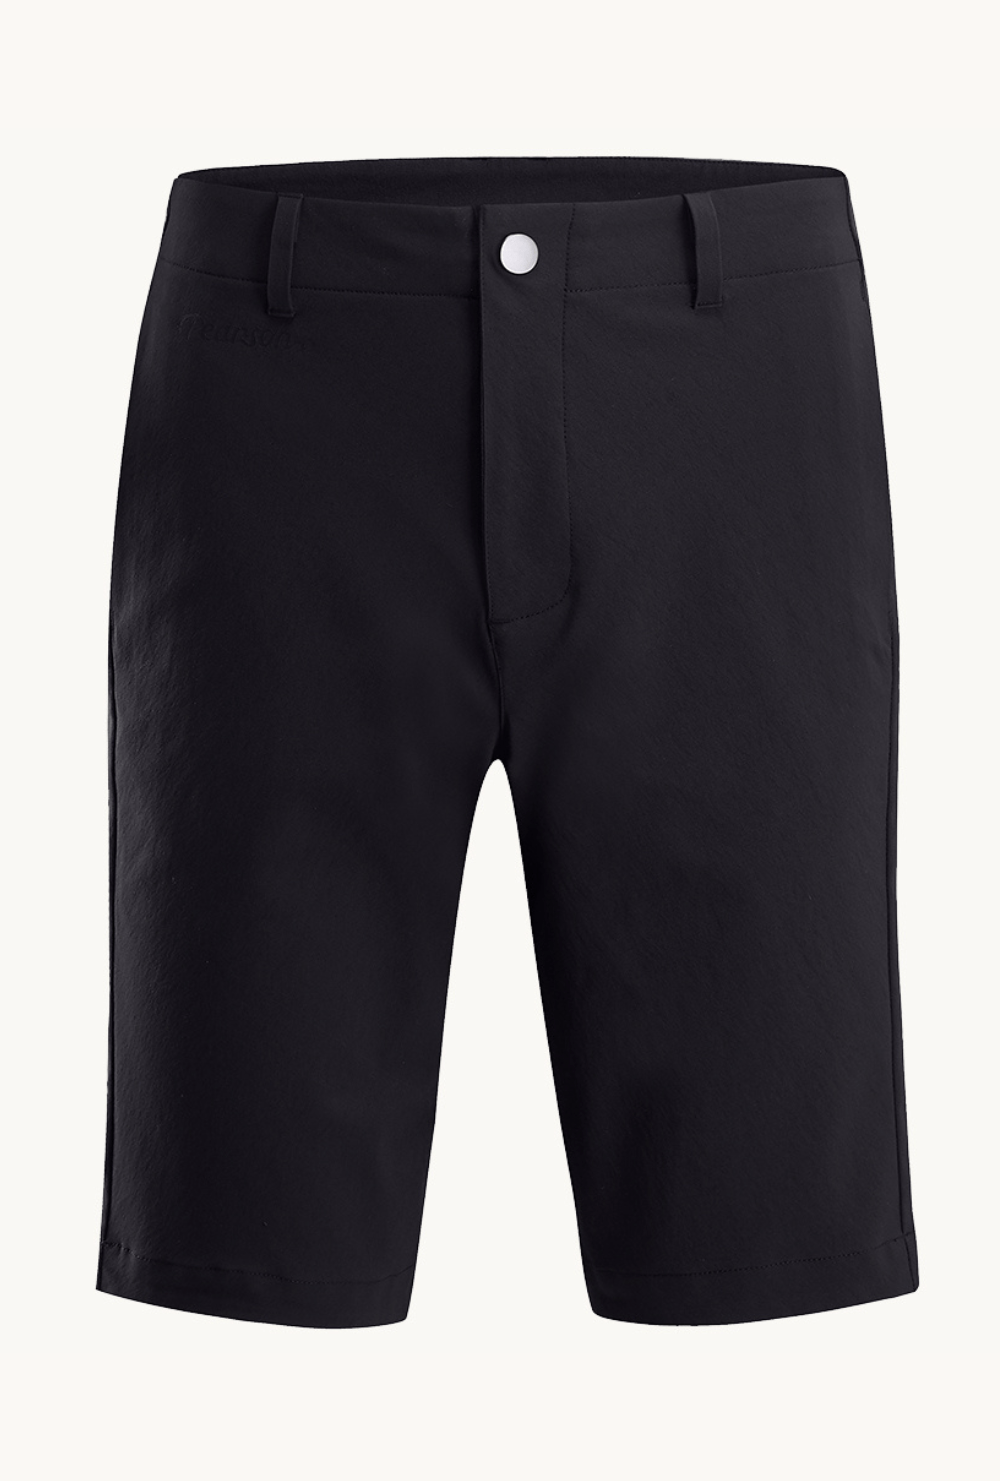 Pearson 1860  Kick Back - Urban Commuter Shorts Black  X-large 36 / Black